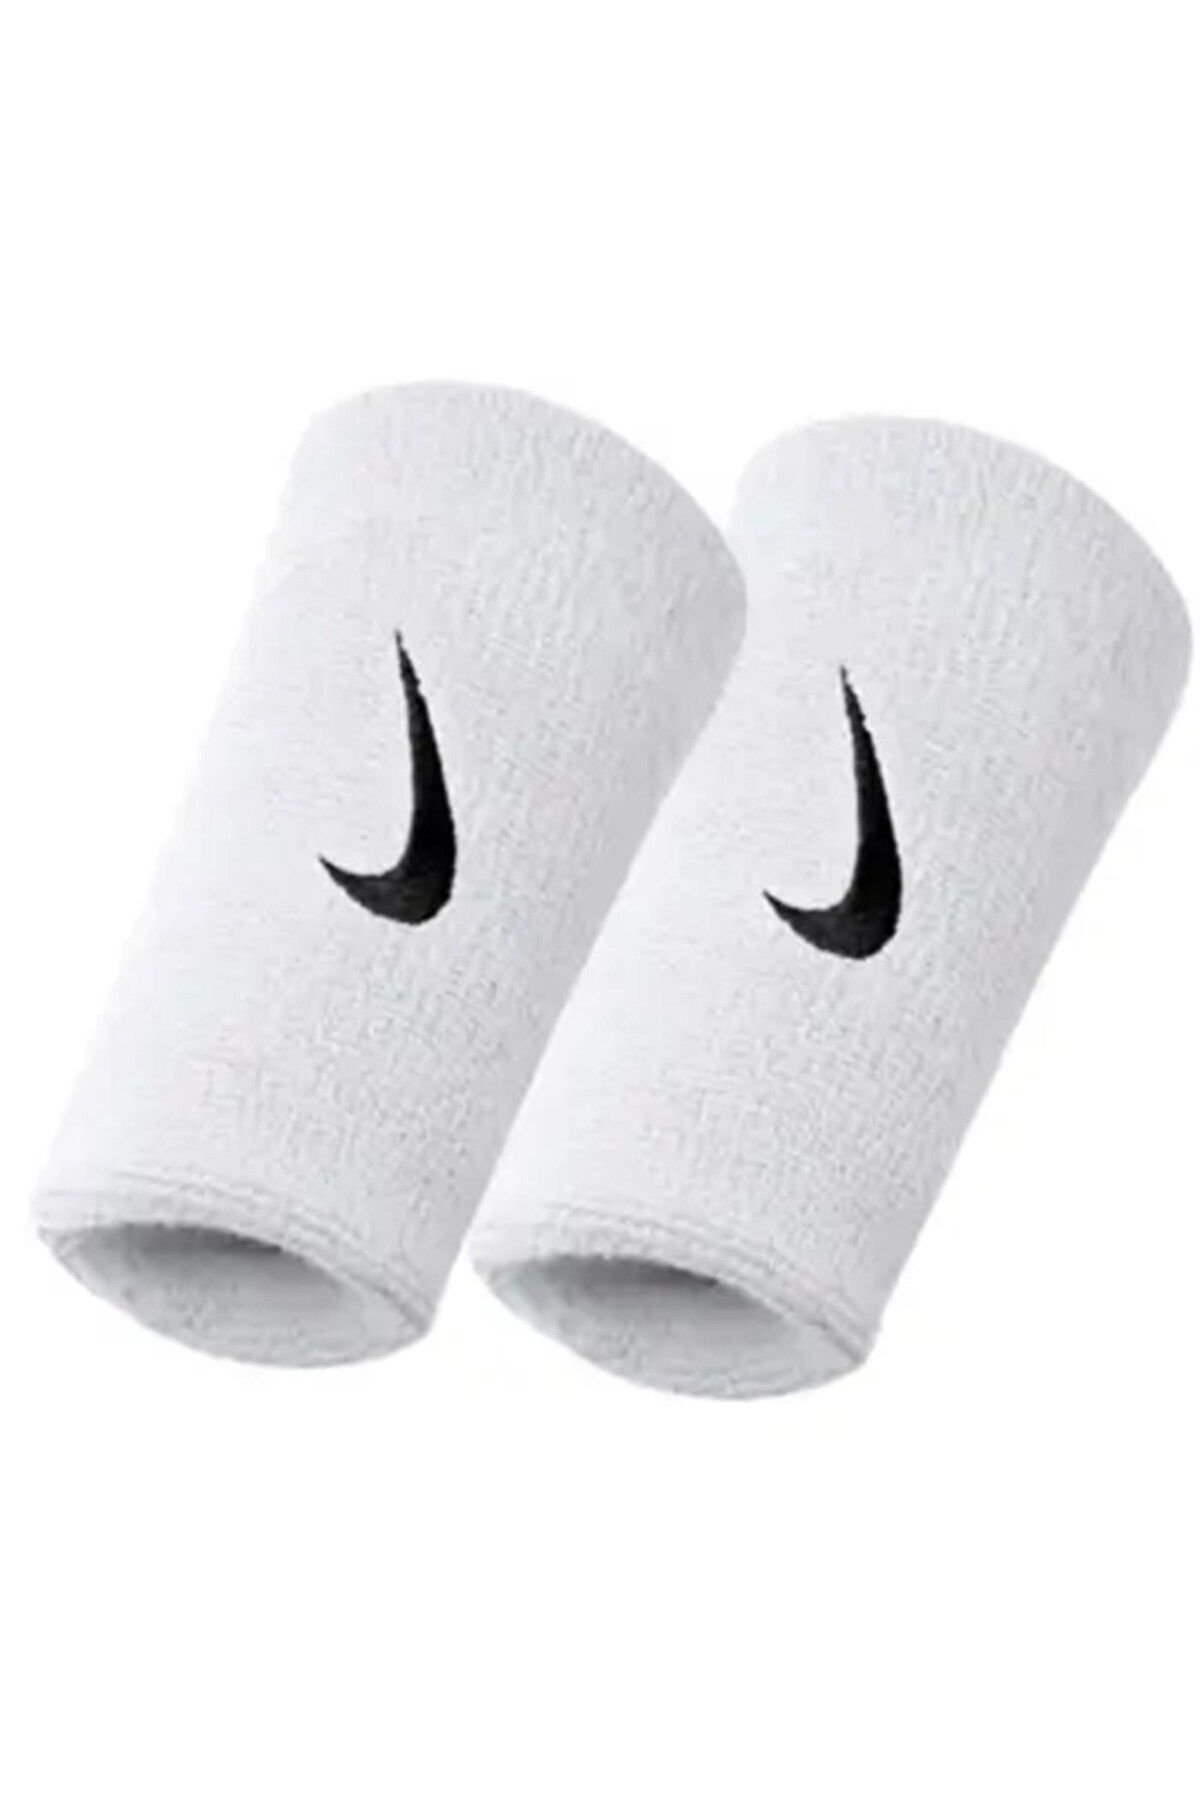 Nike Dri-Fit Doublewide Wristbands Home&Away 2 PK Erkek Bileklik